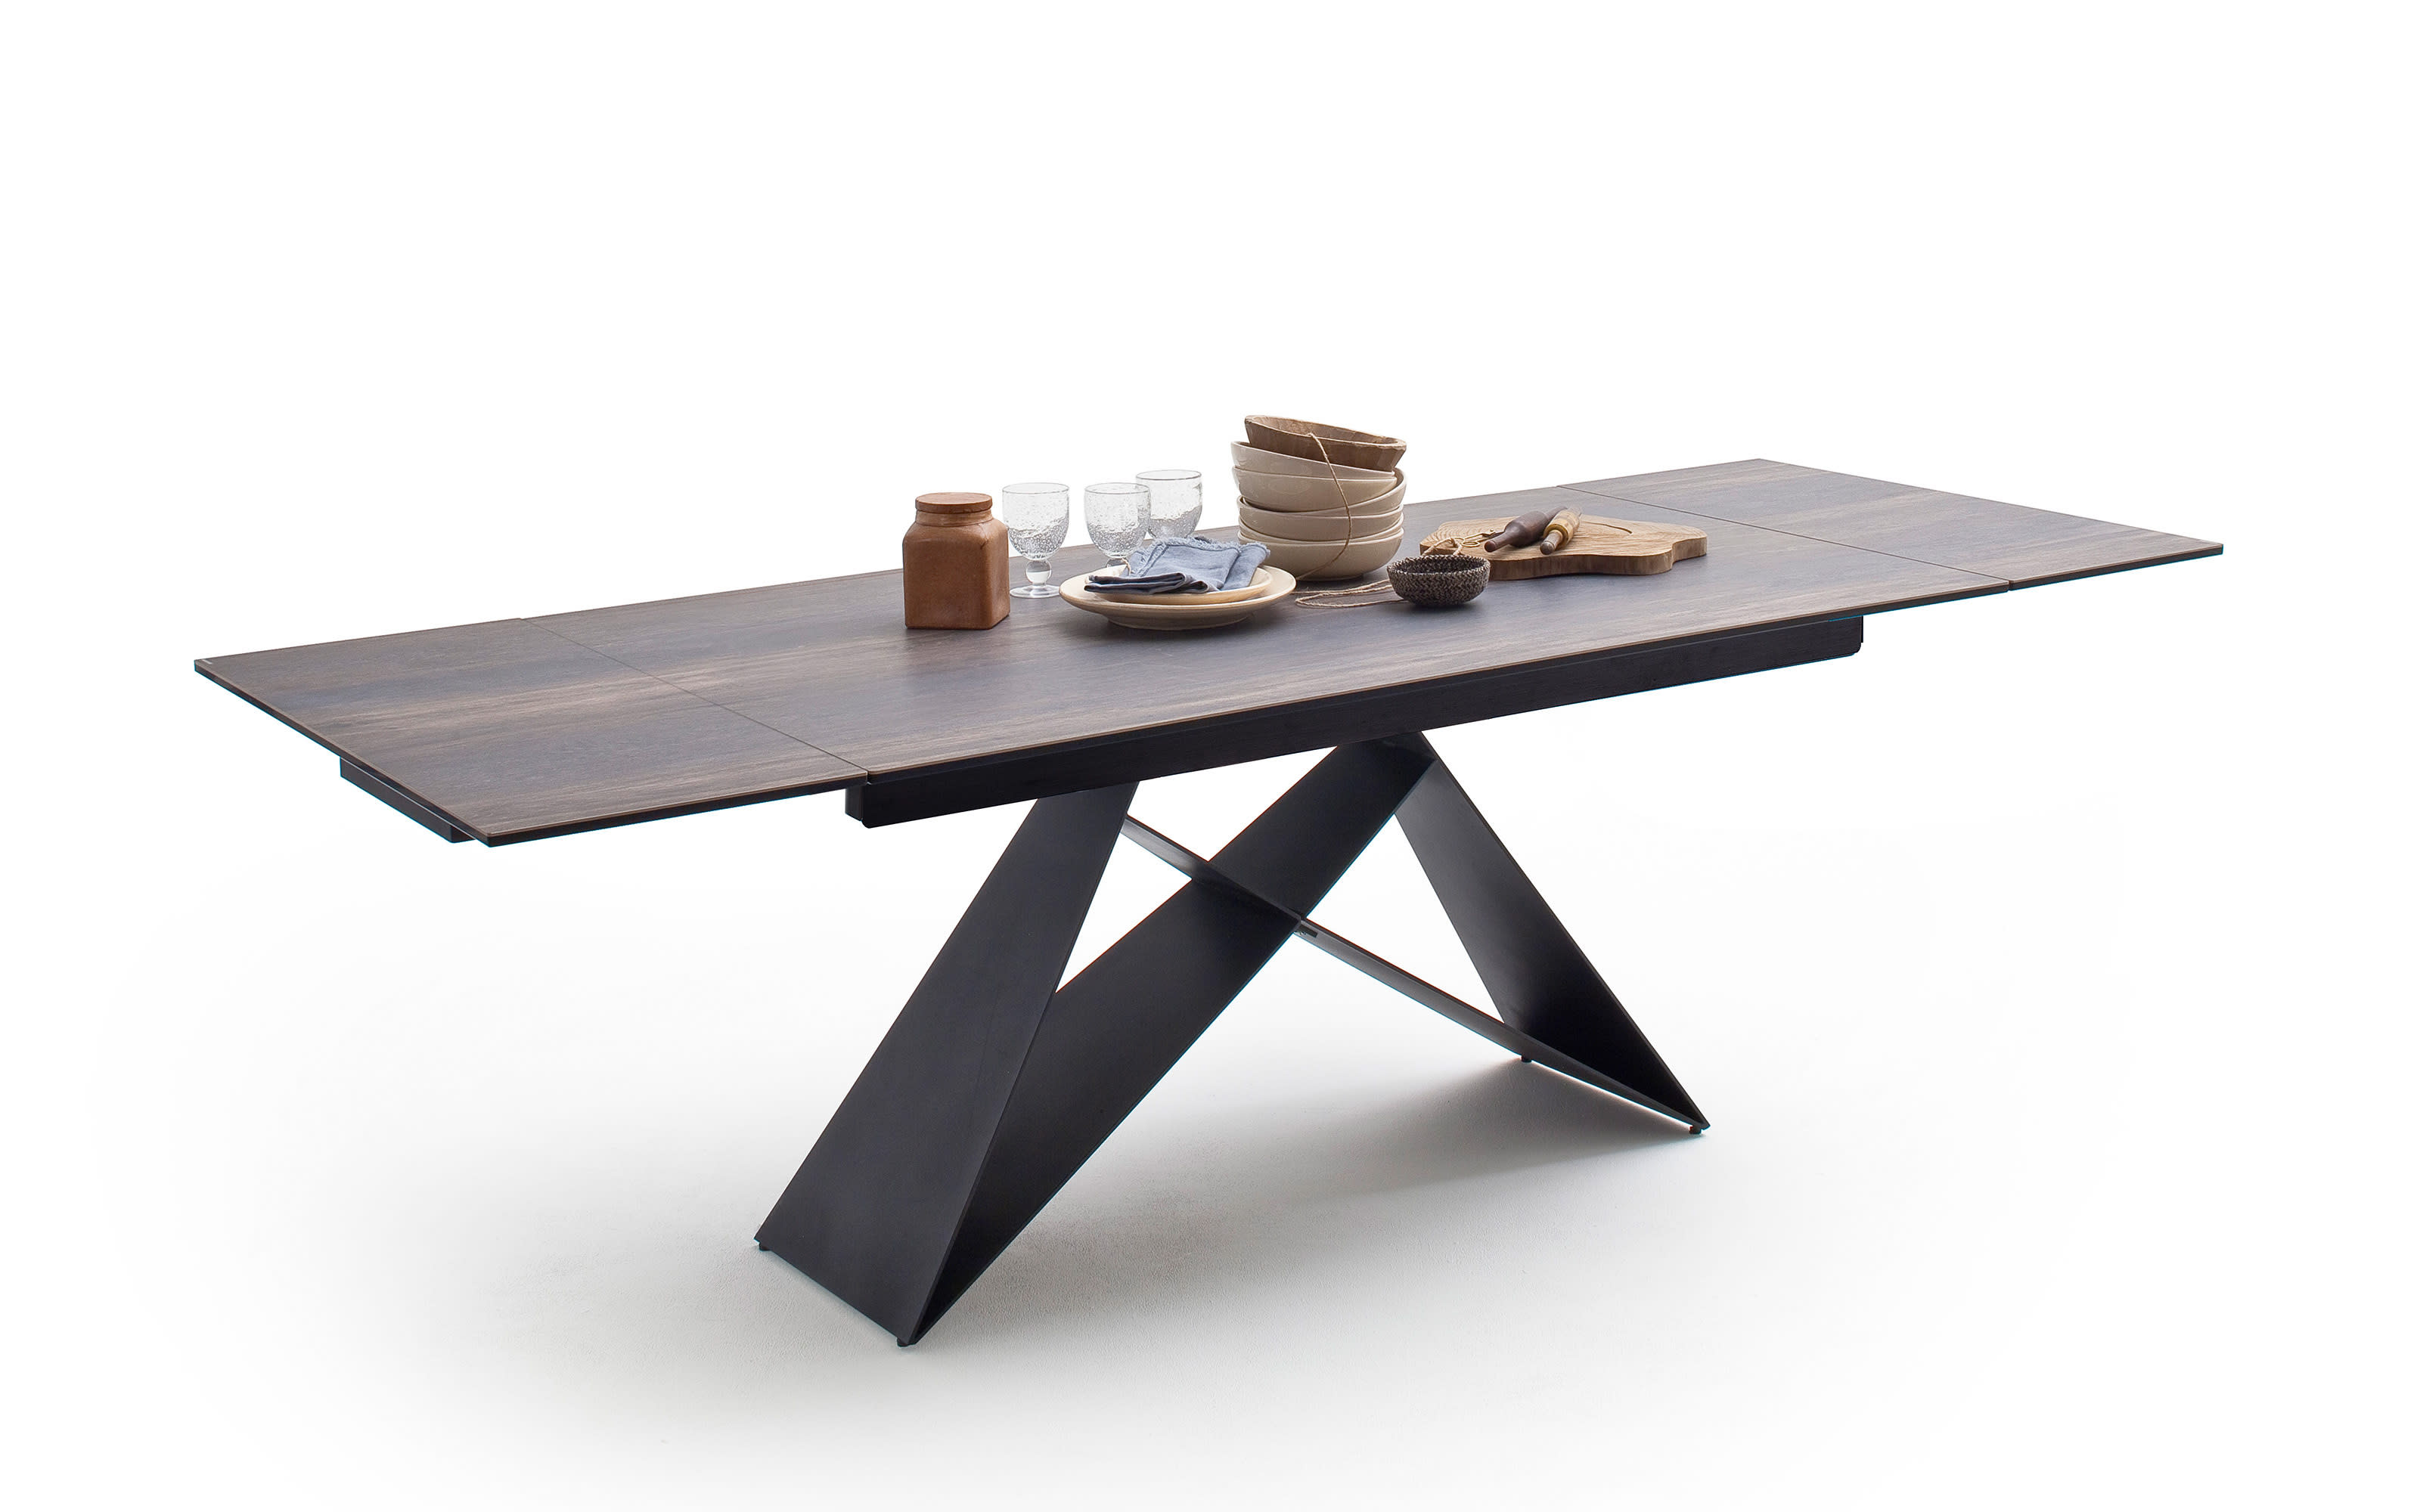 Esstisch Kobe, Holznachbildung barrique, inkl. ausziehbarer Tischplatte